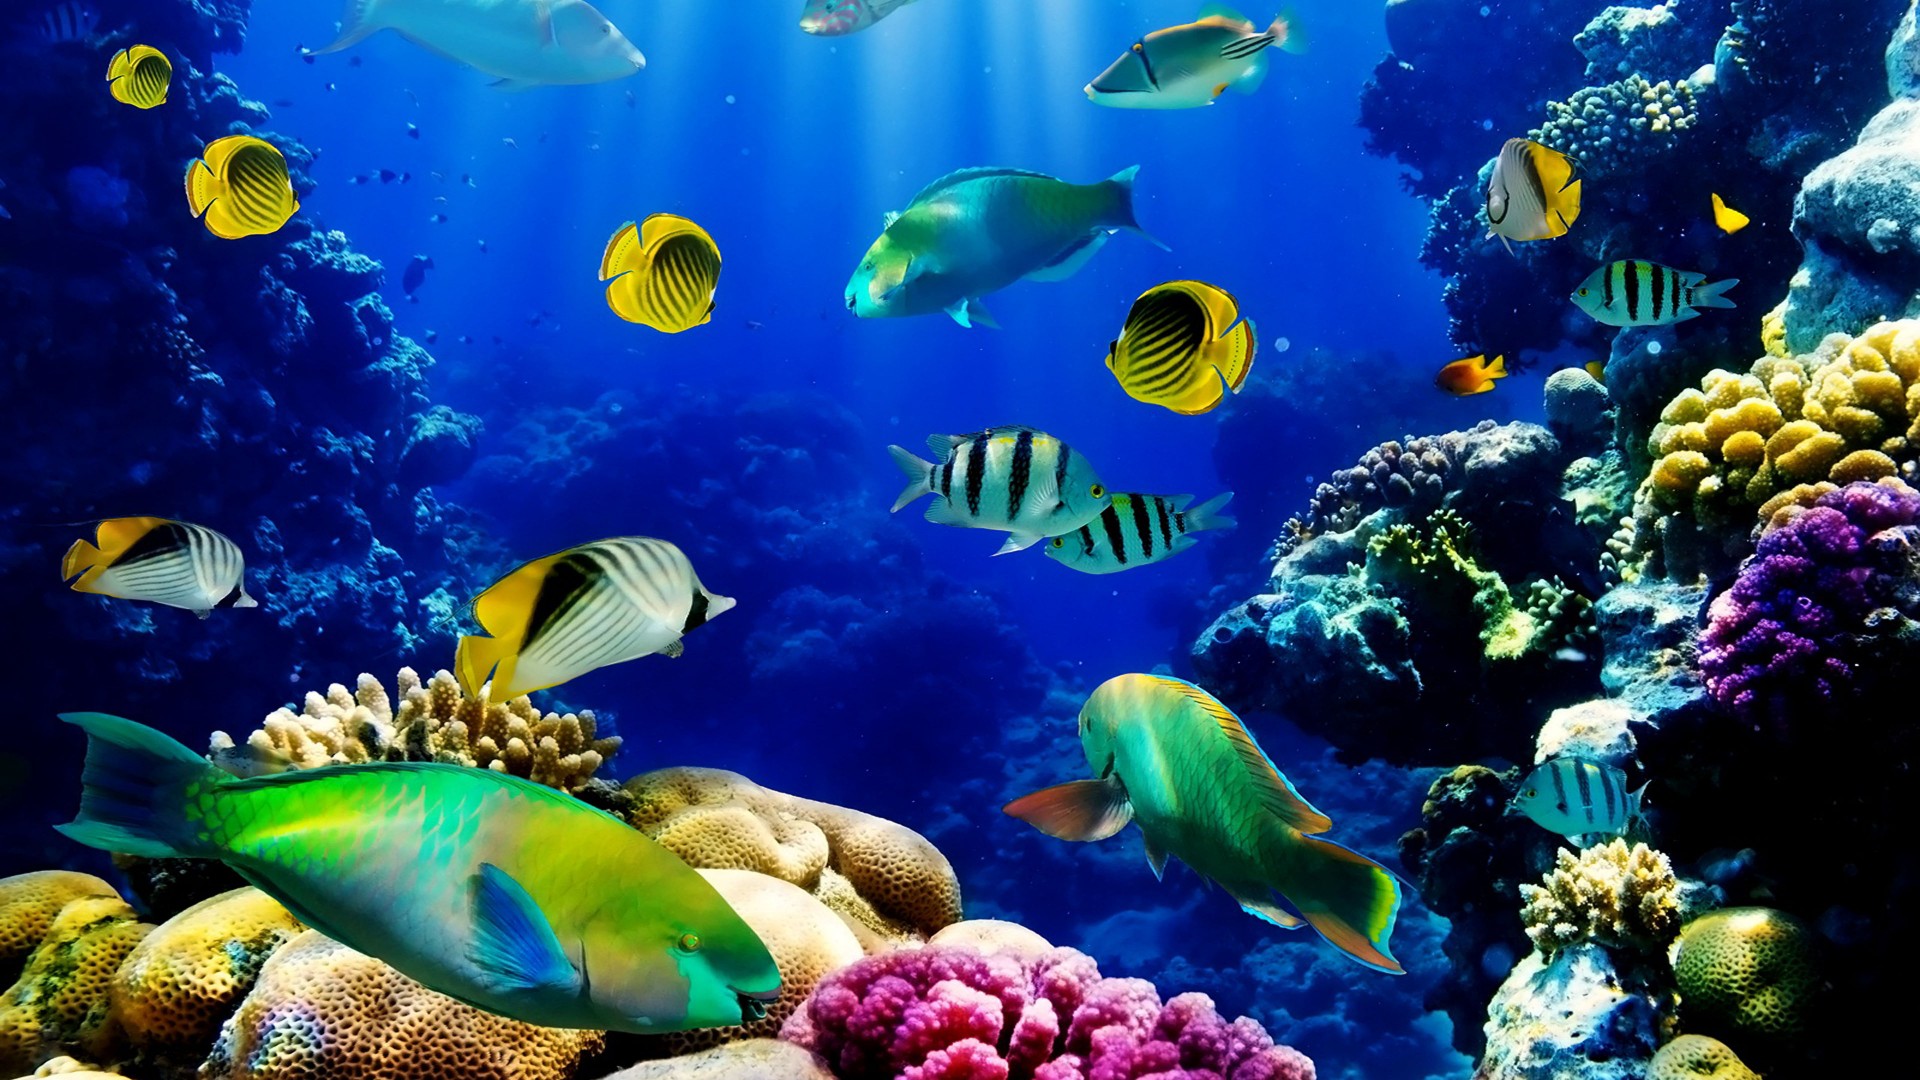 ocean hd live wallpaper,underwater,coral reef,marine biology,coral reef fish,reef